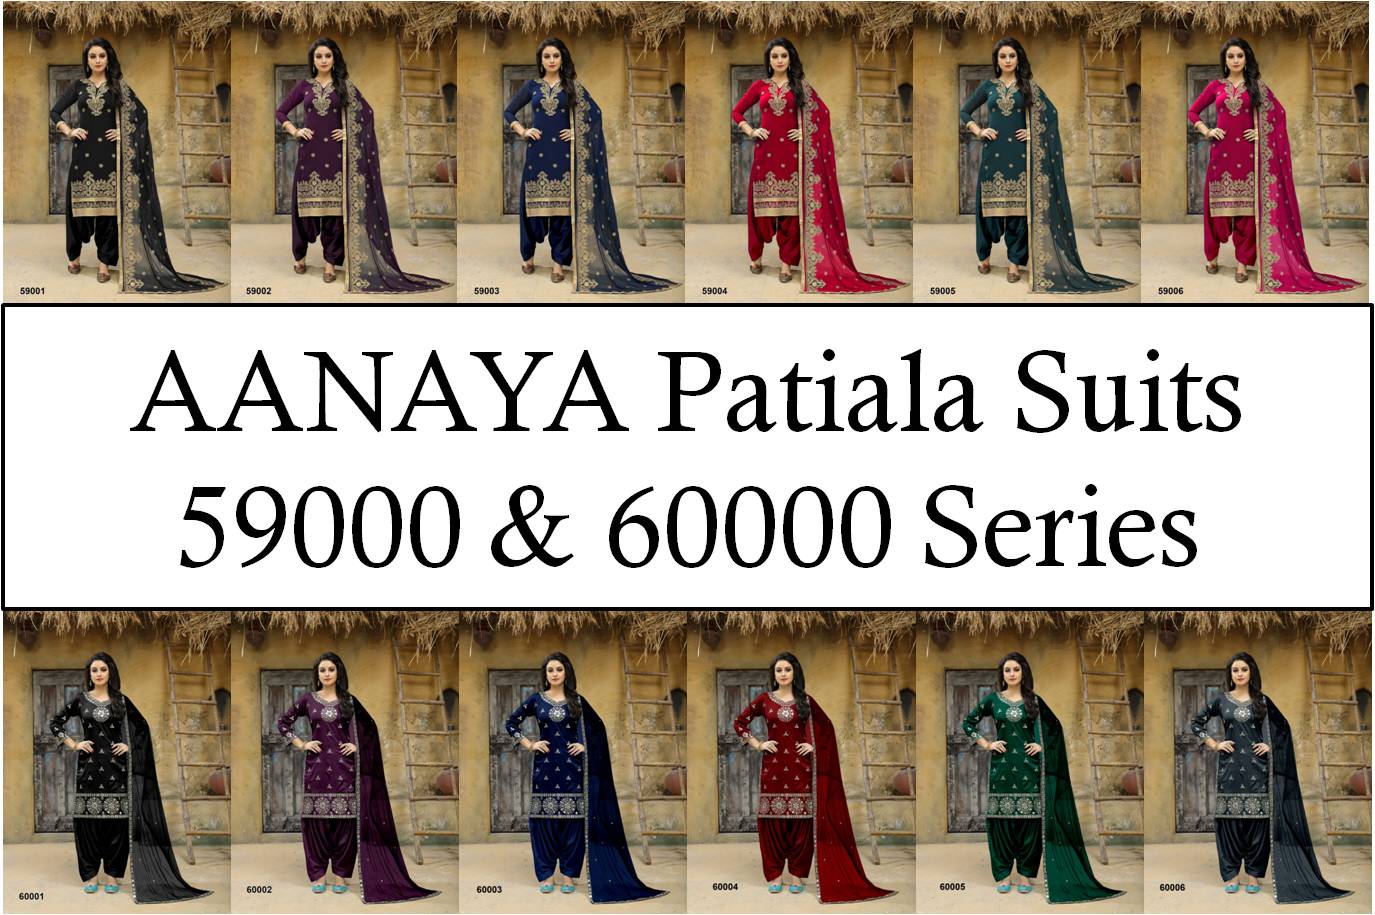 Aanaya Patiala Suits 59000 and 60000 Series